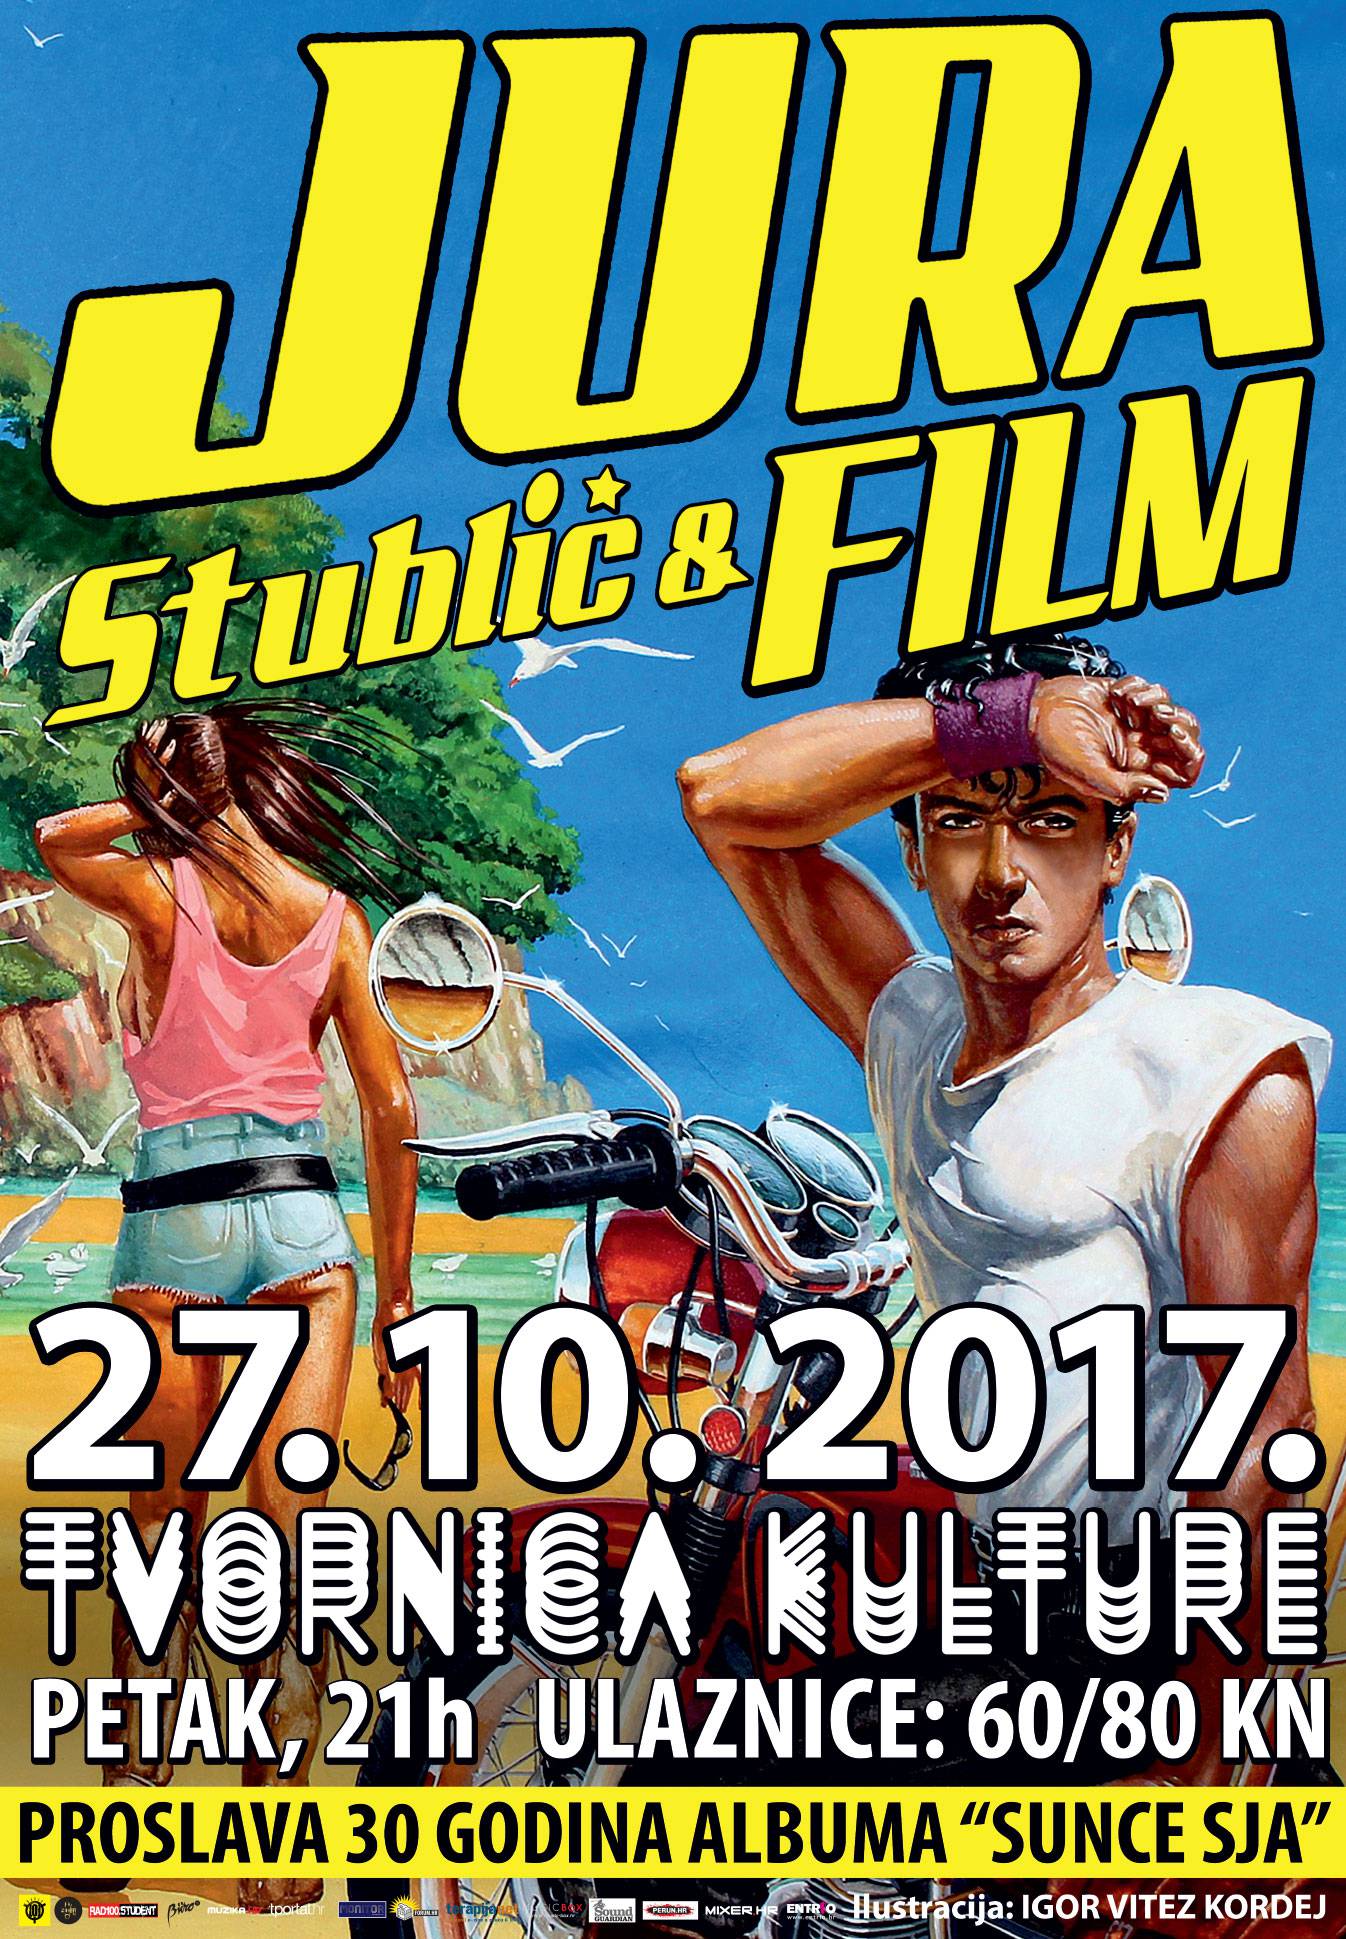 Jura Stublić i Film u Tvornici slave rođendan kultnog albuma